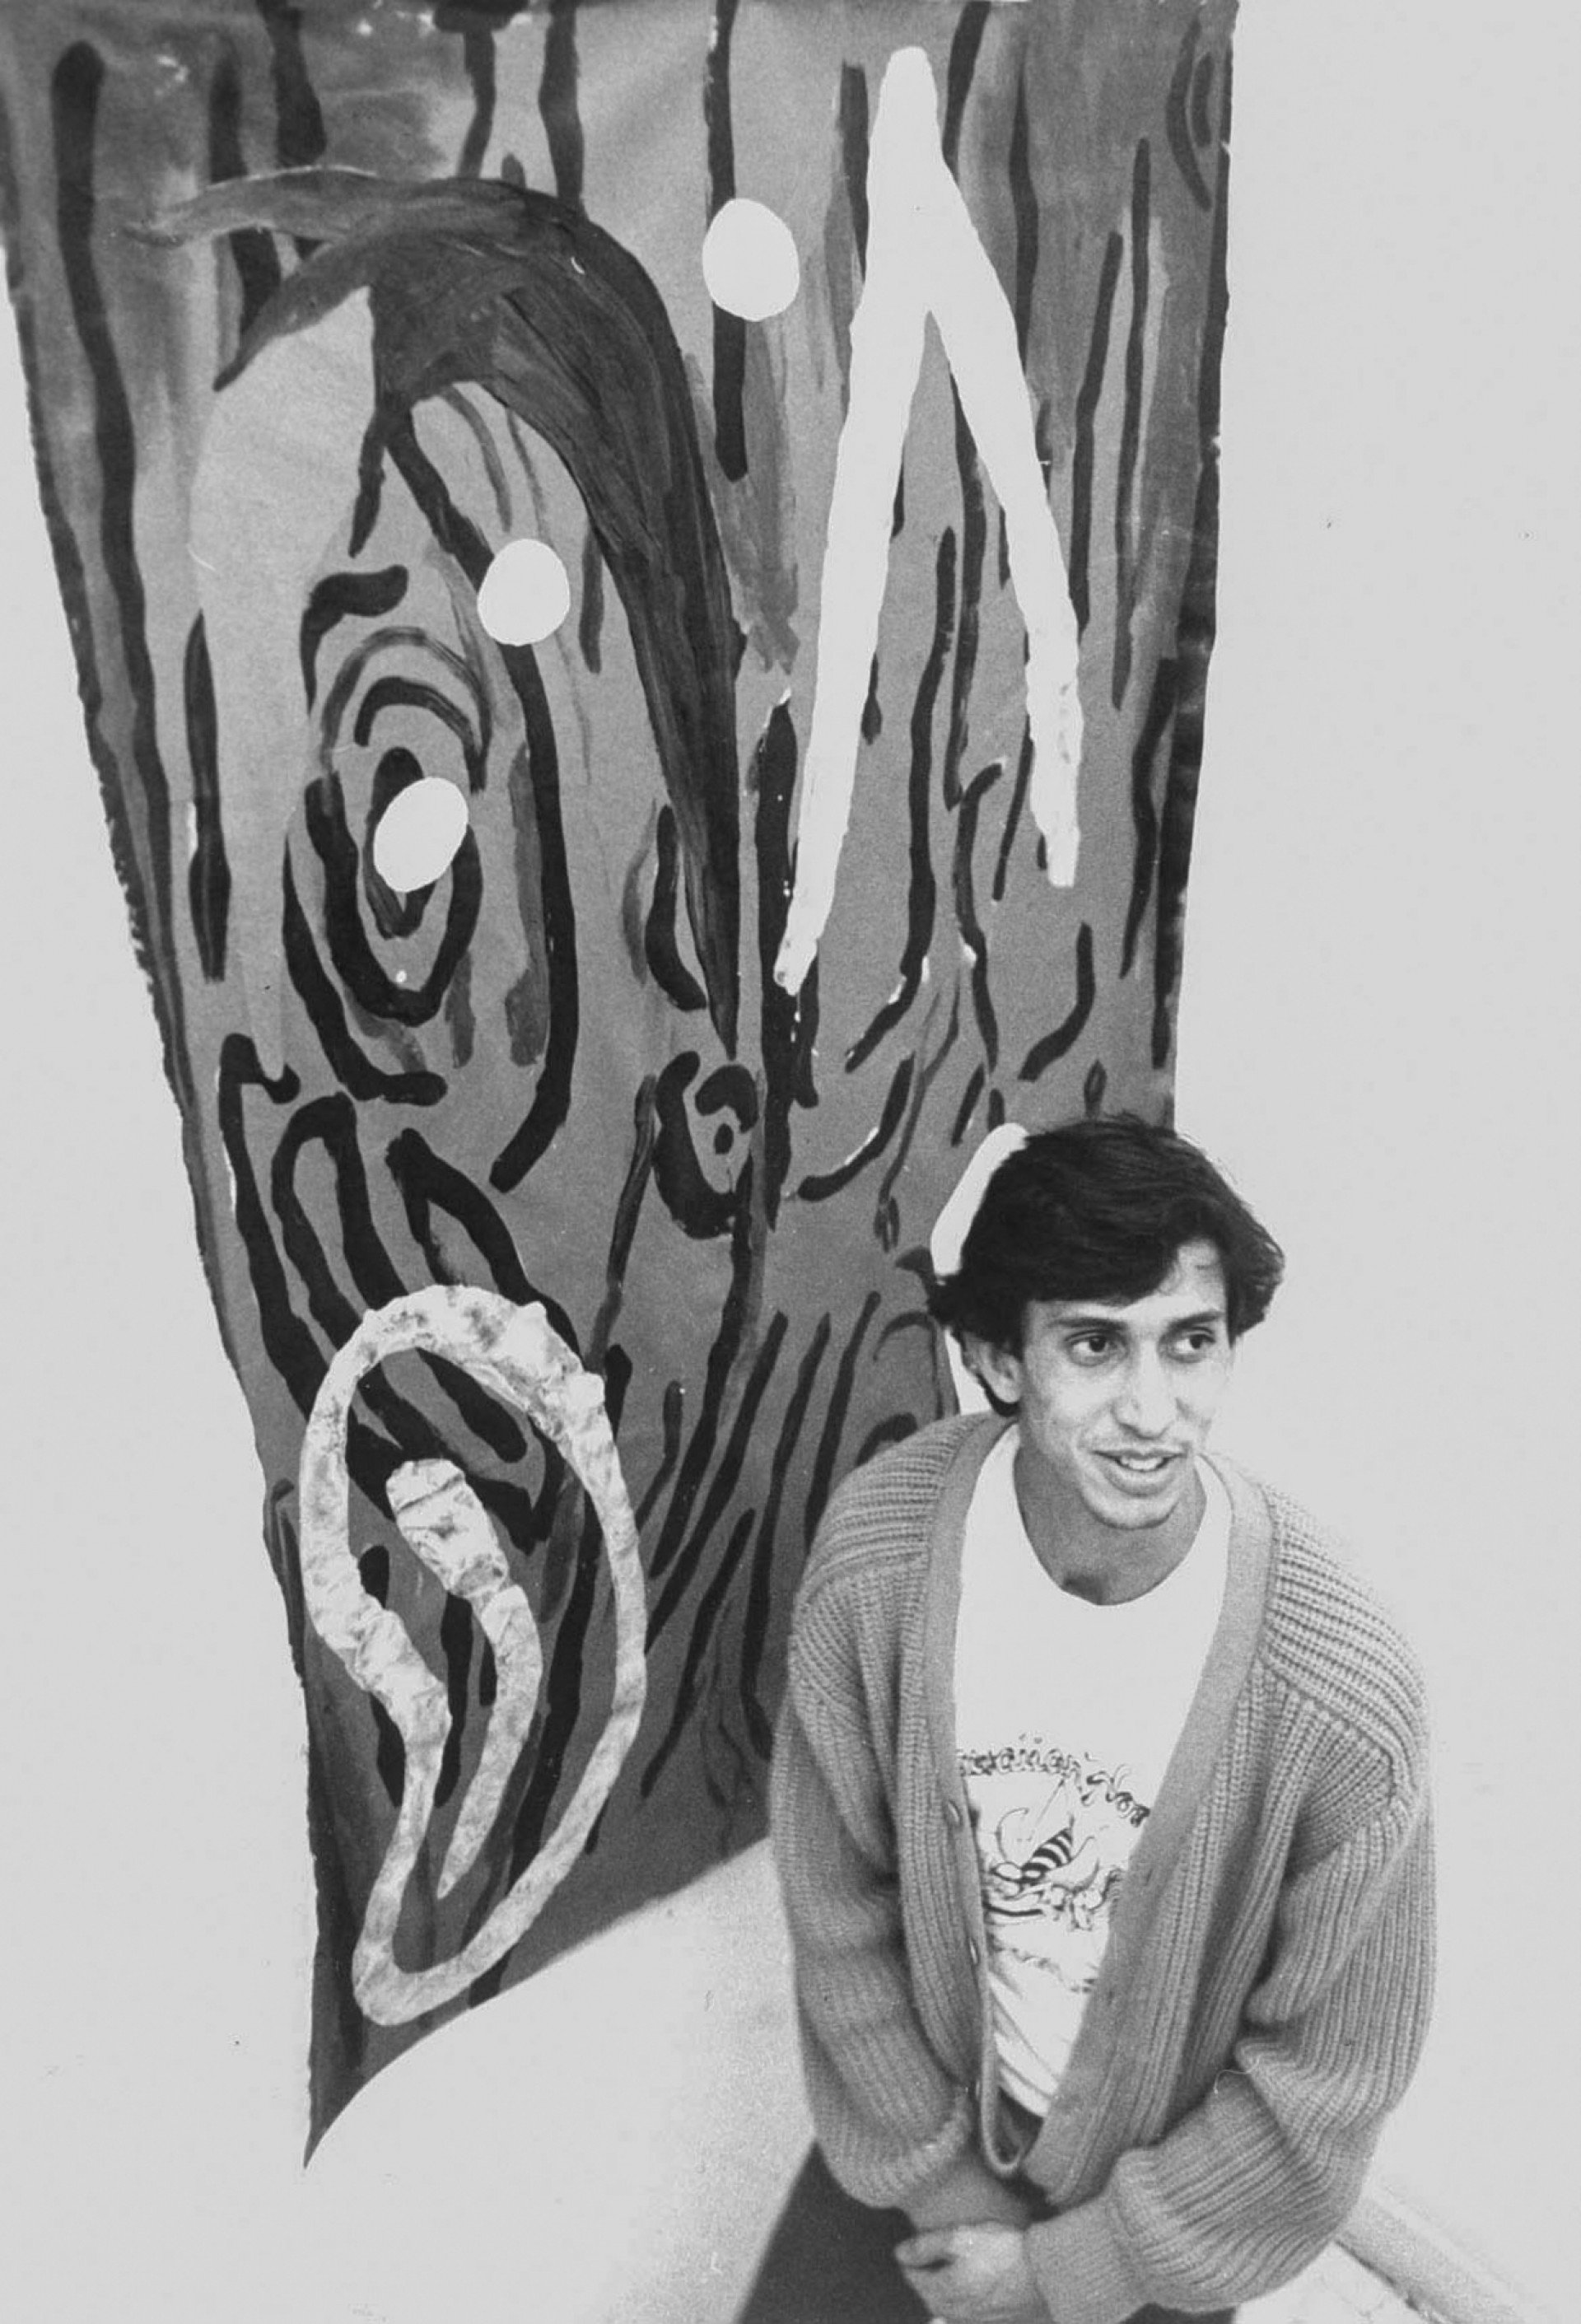 ARTISTA plástico Leonilson em registro de 1985 (Foto: OSWALDO JURNO/Agência estado)